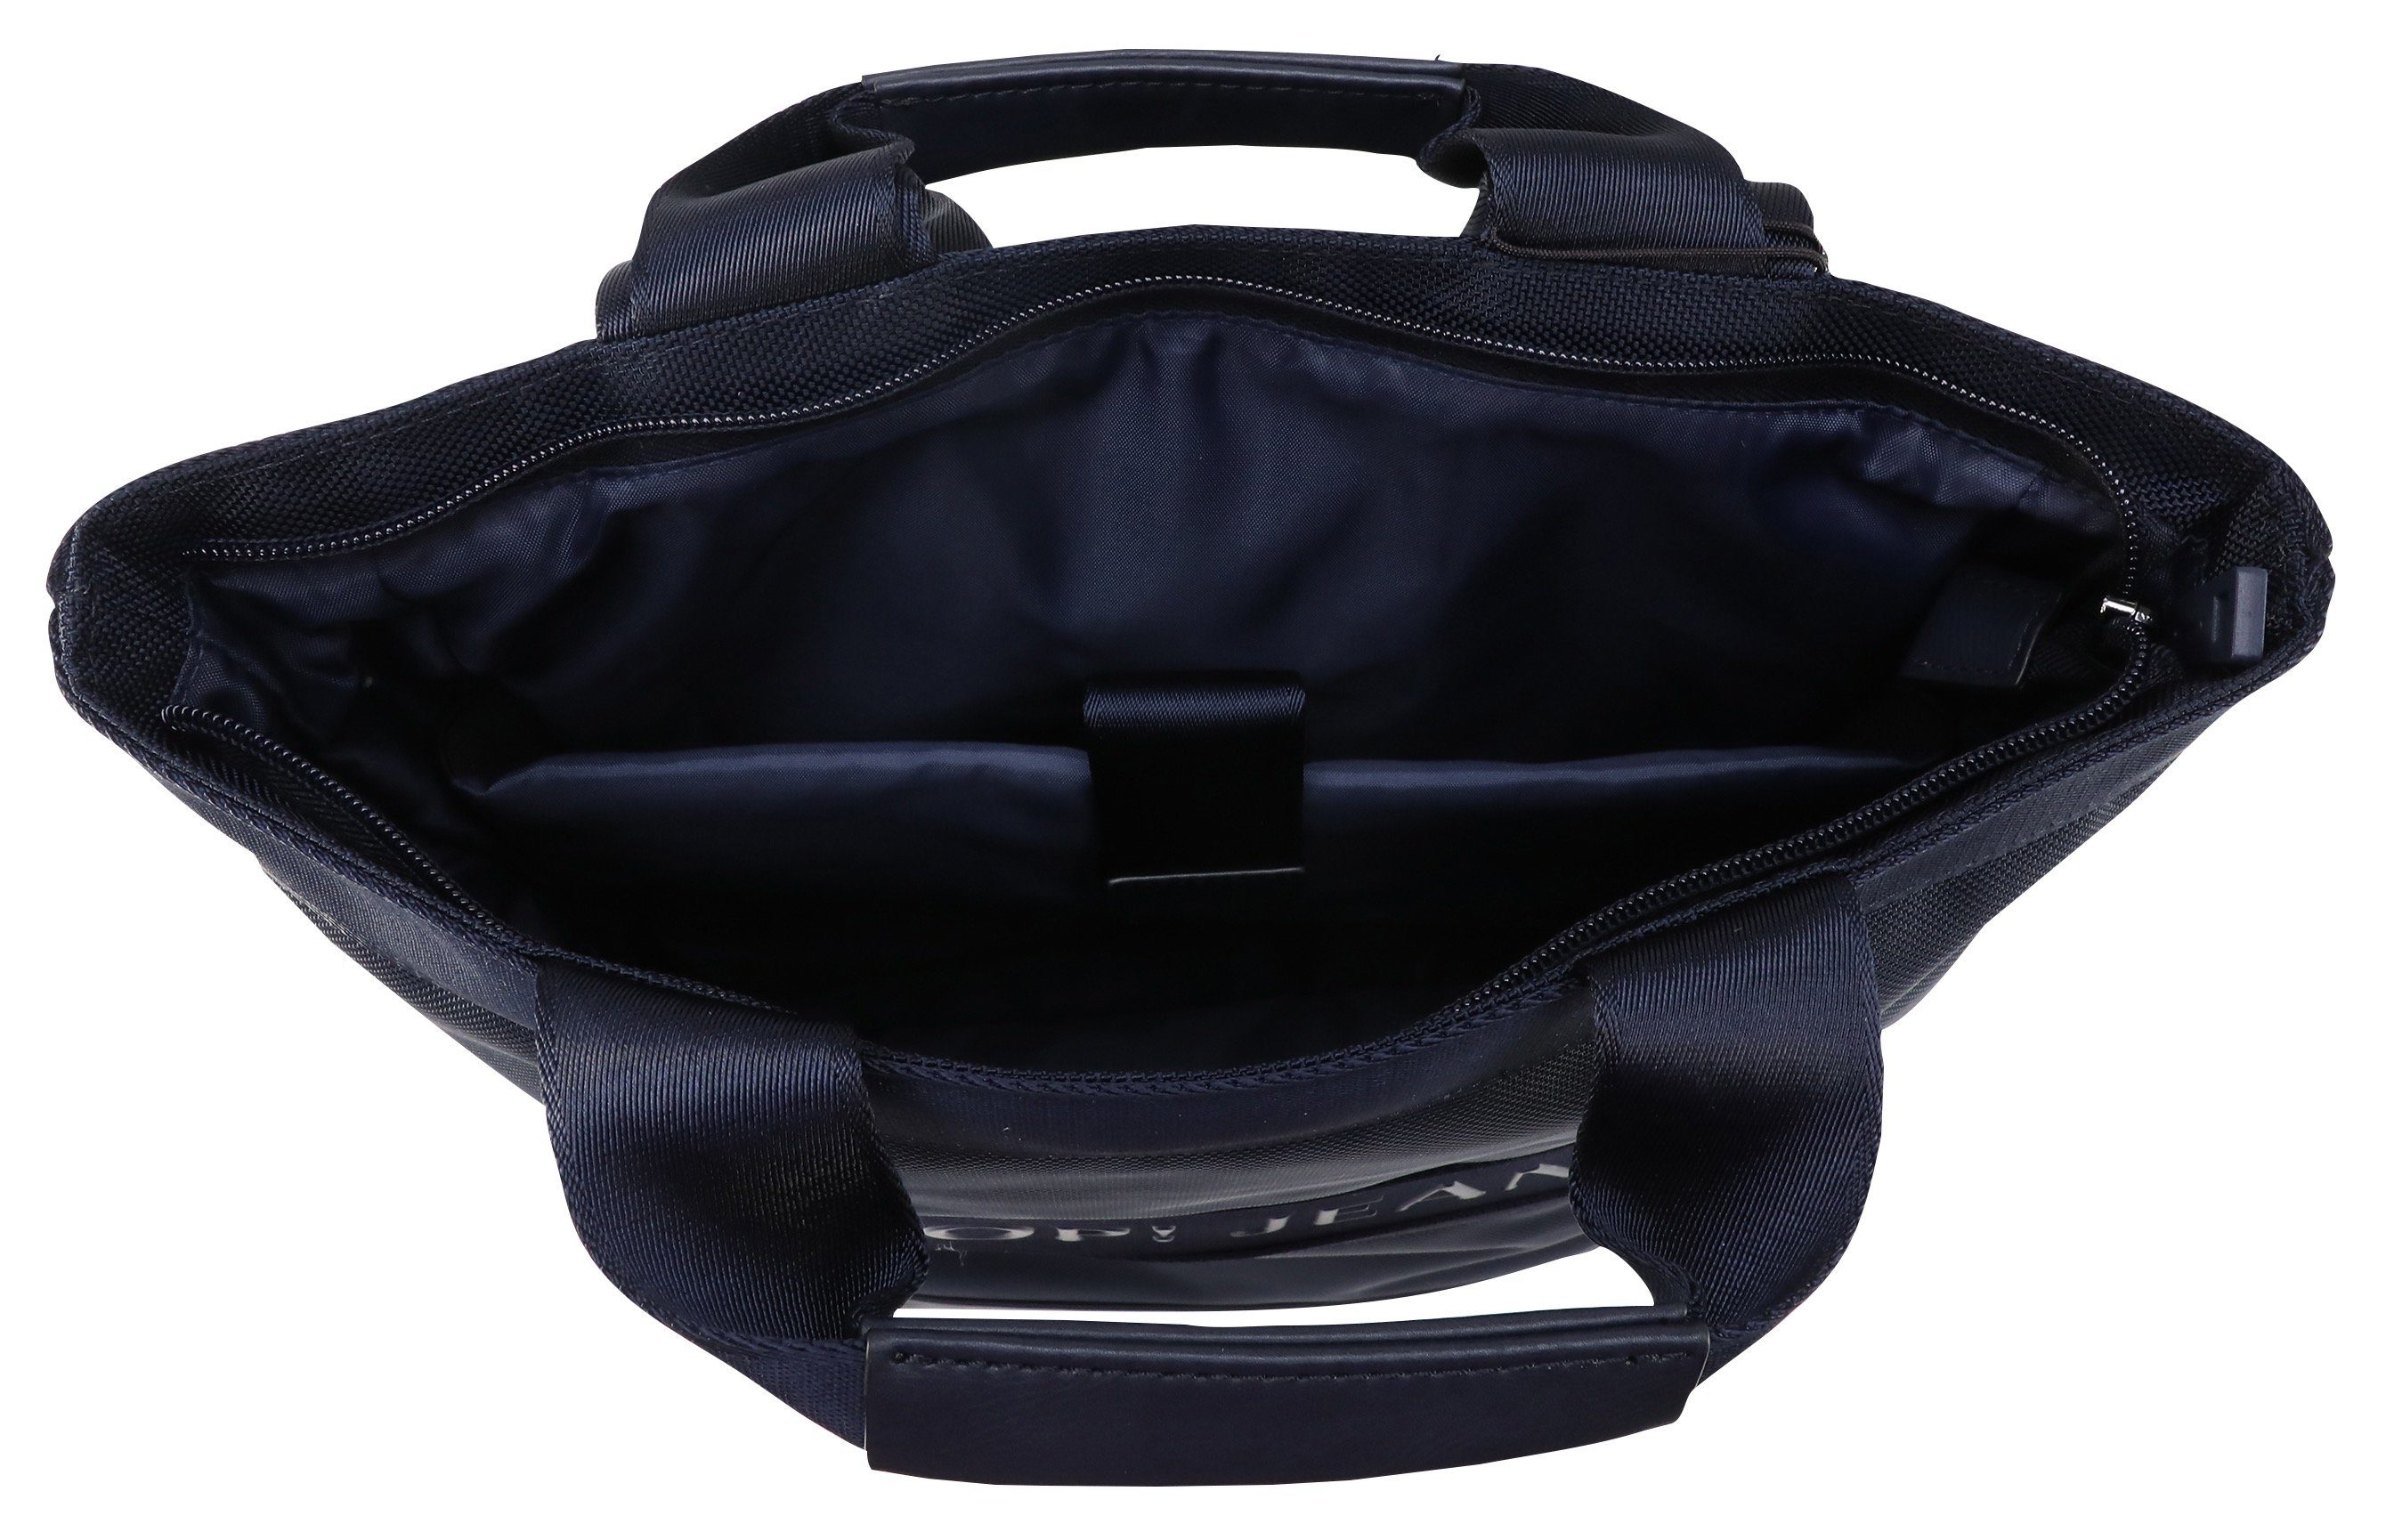 mit falk Jeans Joop Reißverschluss-Vortasche backpack svz, Cityrucksack modica darkblue